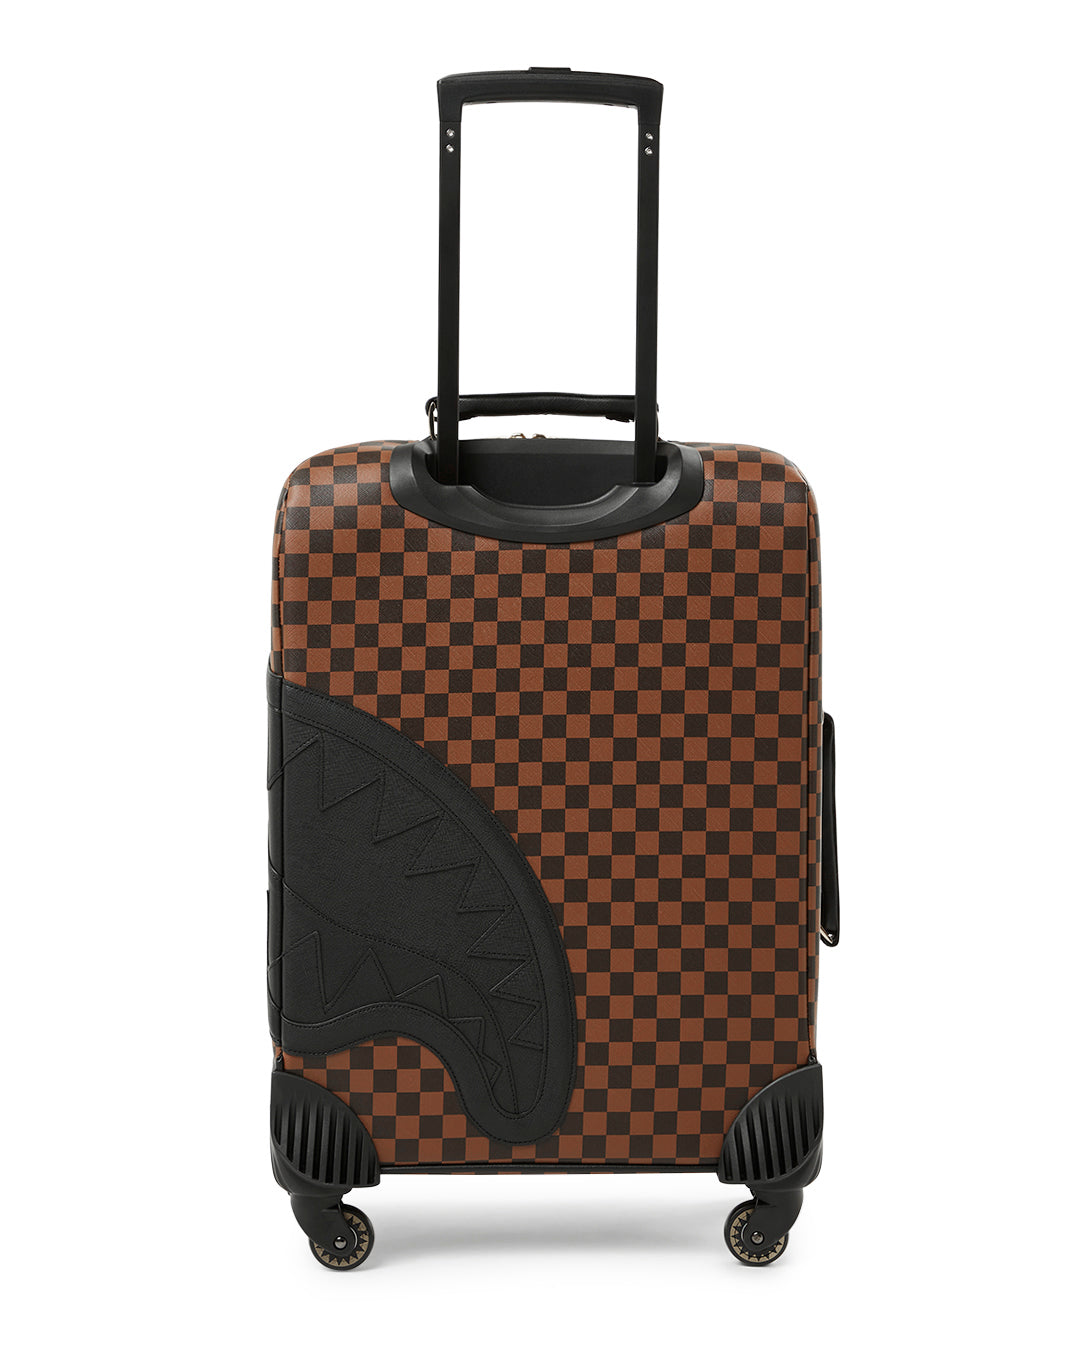 A Louis Vuitton Monogram Pegase Suitcase. Durable Leather Exterior. Front  Compartment With Zipper, Auction